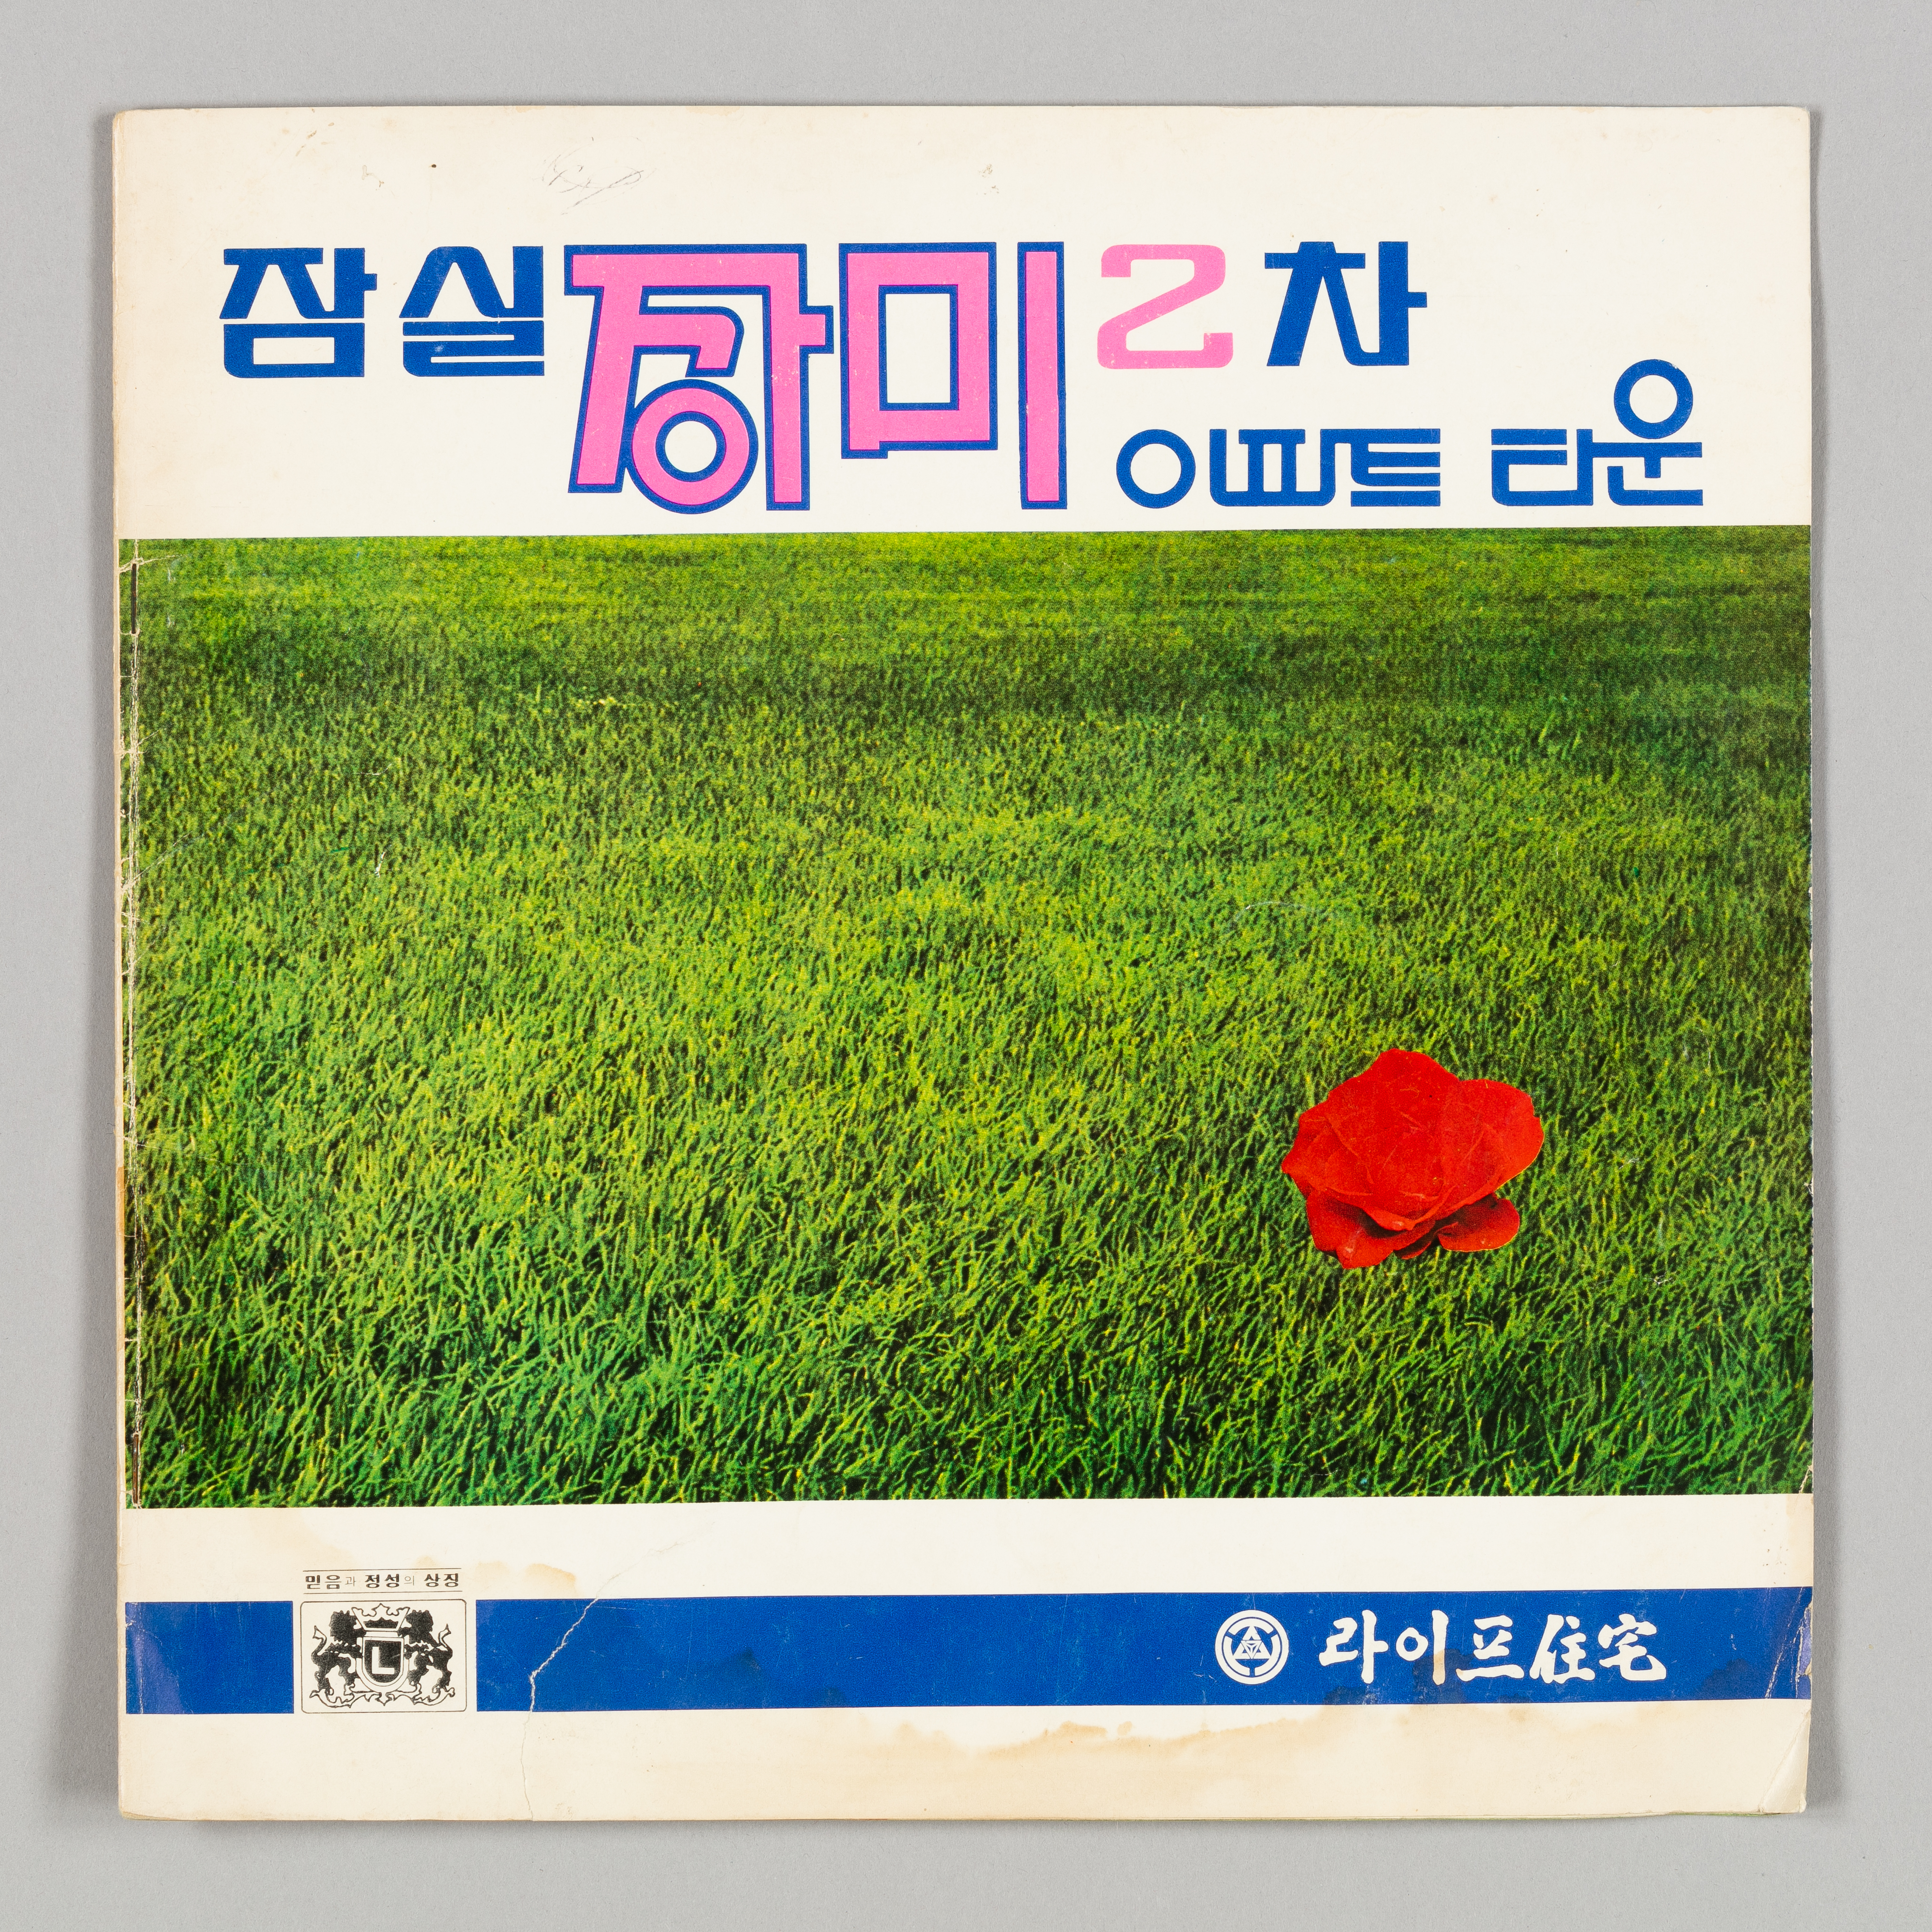 대한민국역사박물관에서 진행하는 ‘목돈의 꿈’은 한국 현대사에서 드러난 다양한 재테크의 모습을 보여 준다. 사진은 서울 잠실 장미아파트 분양 소식을 전하는 전단지. 대한민국역사박물관 제공